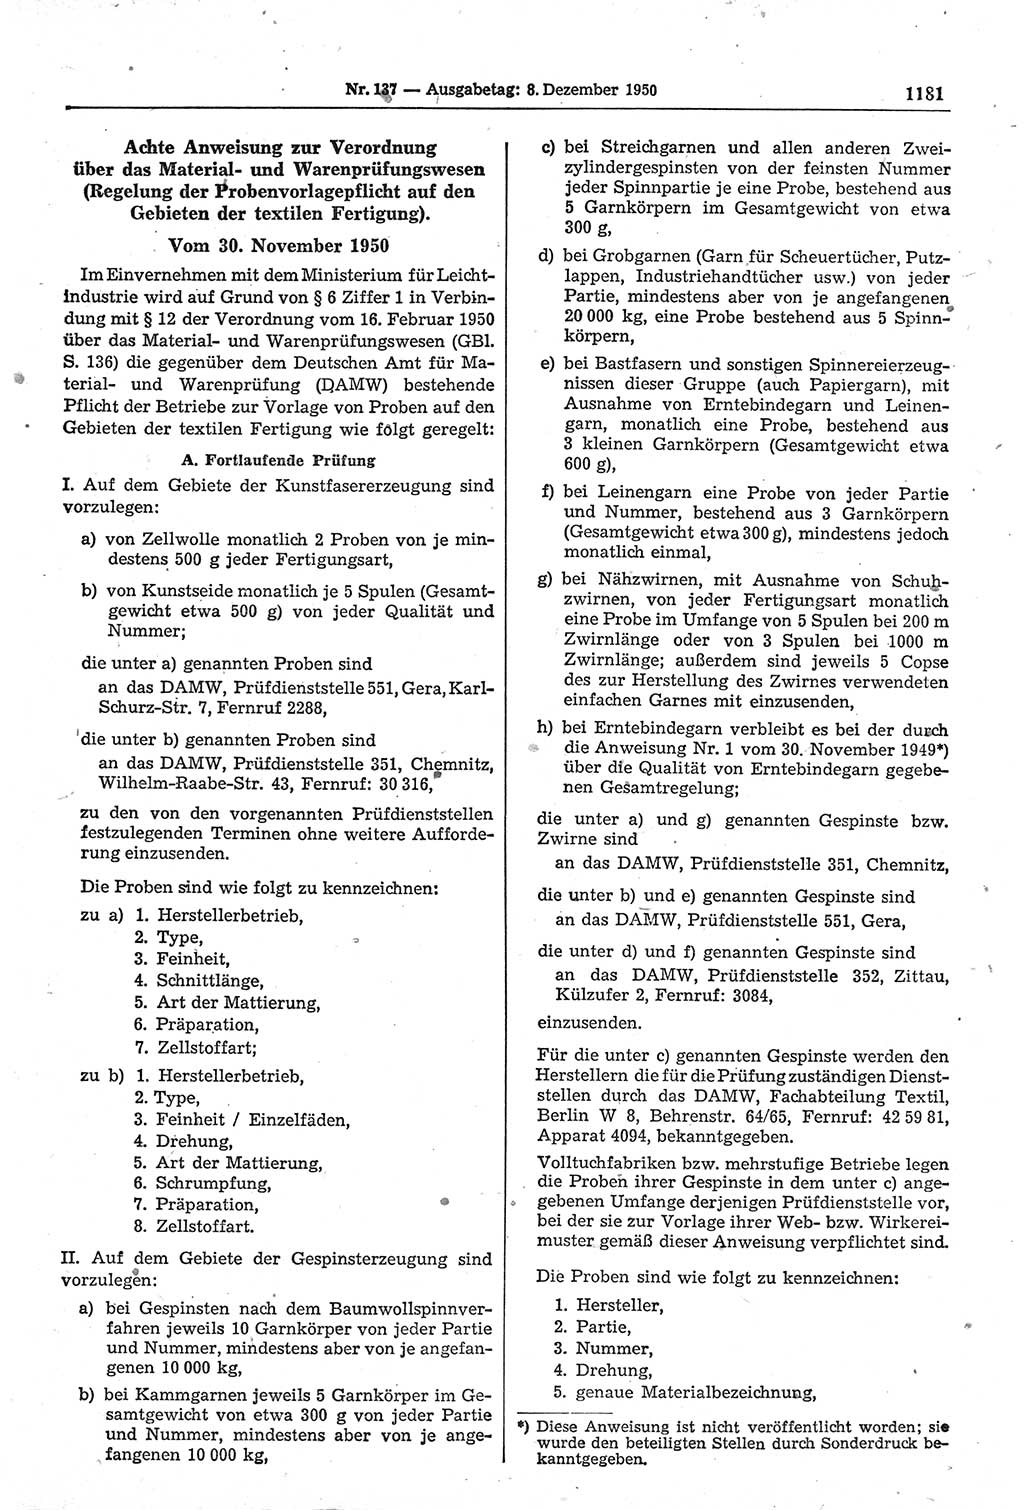 Gesetzblatt (GBl.) der Deutschen Demokratischen Republik (DDR) 1950, Seite 1181 (GBl. DDR 1950, S. 1181)